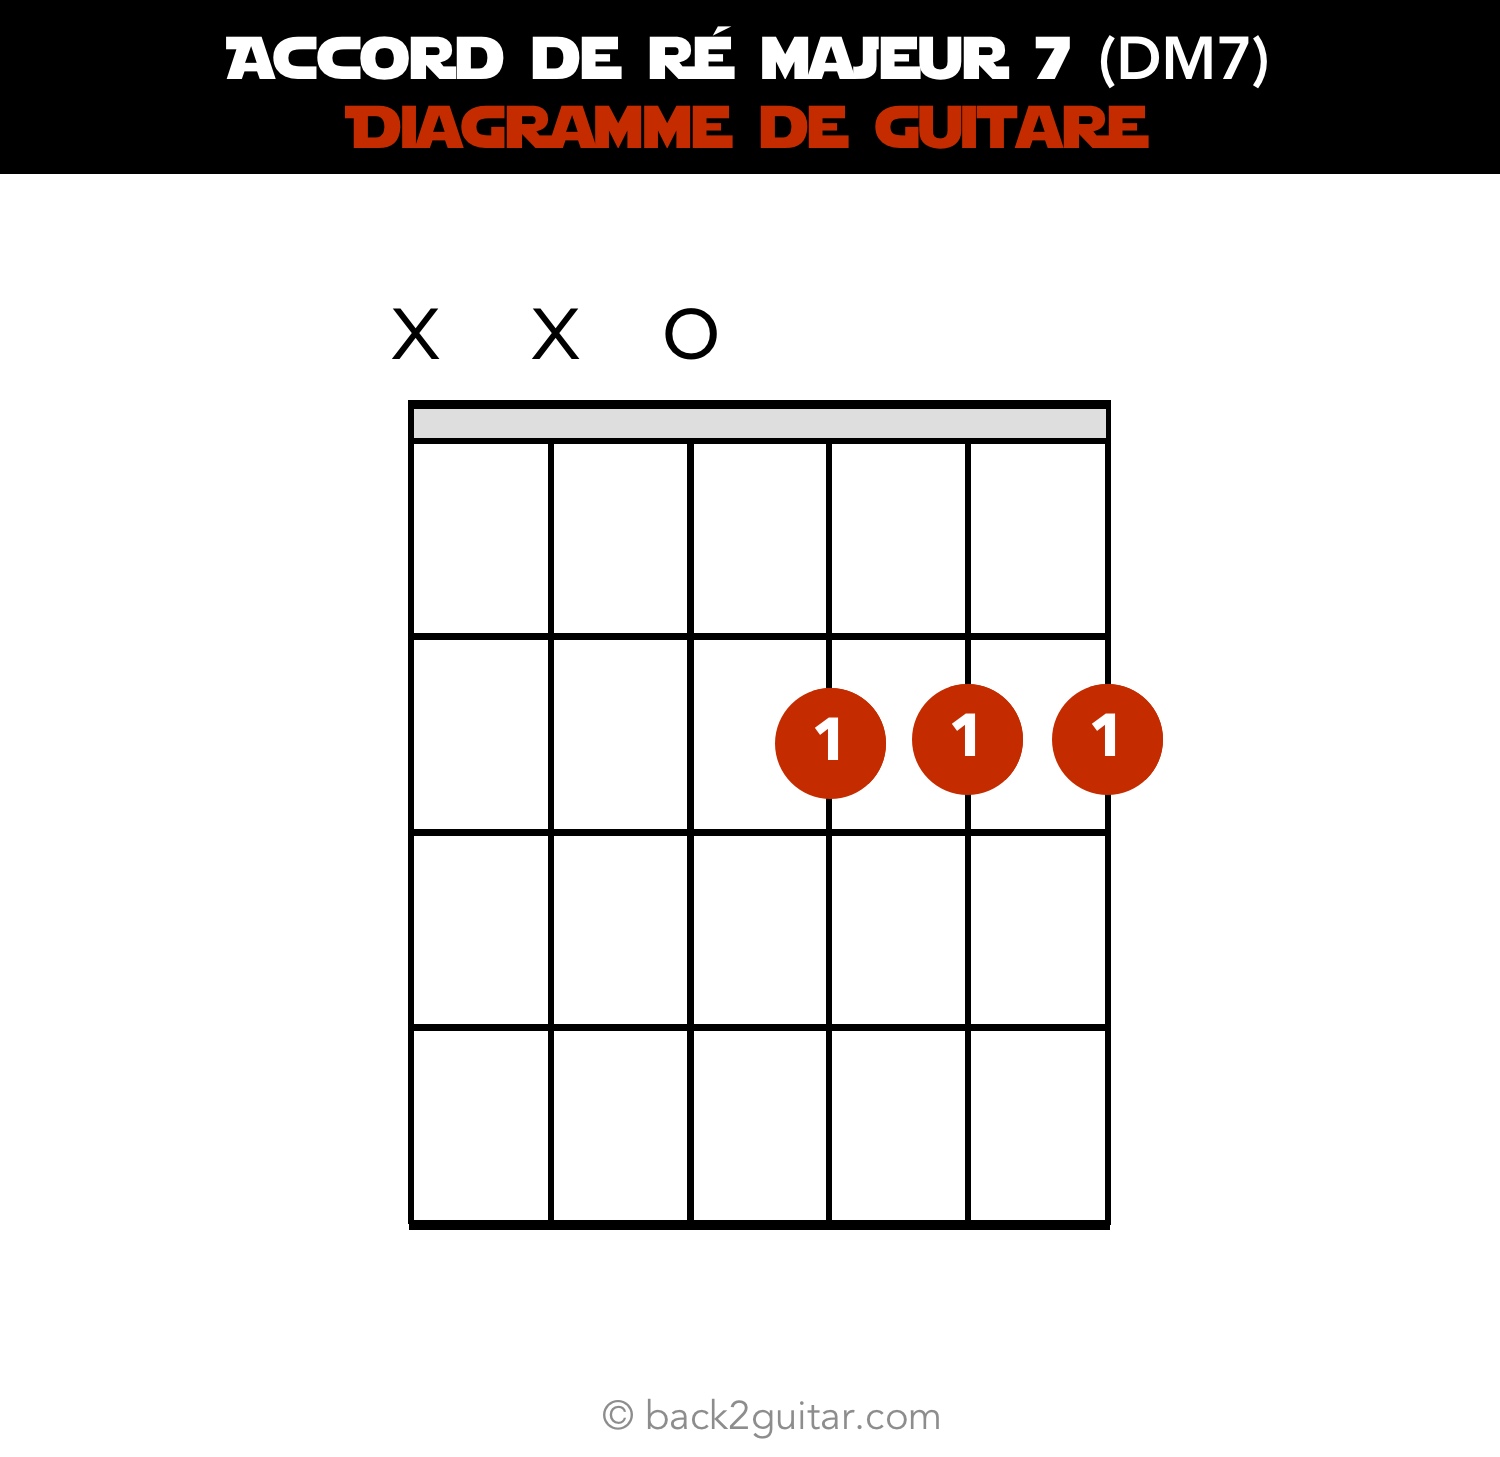 accord guitare ré majeur 7 diagramme guitare (DM7)